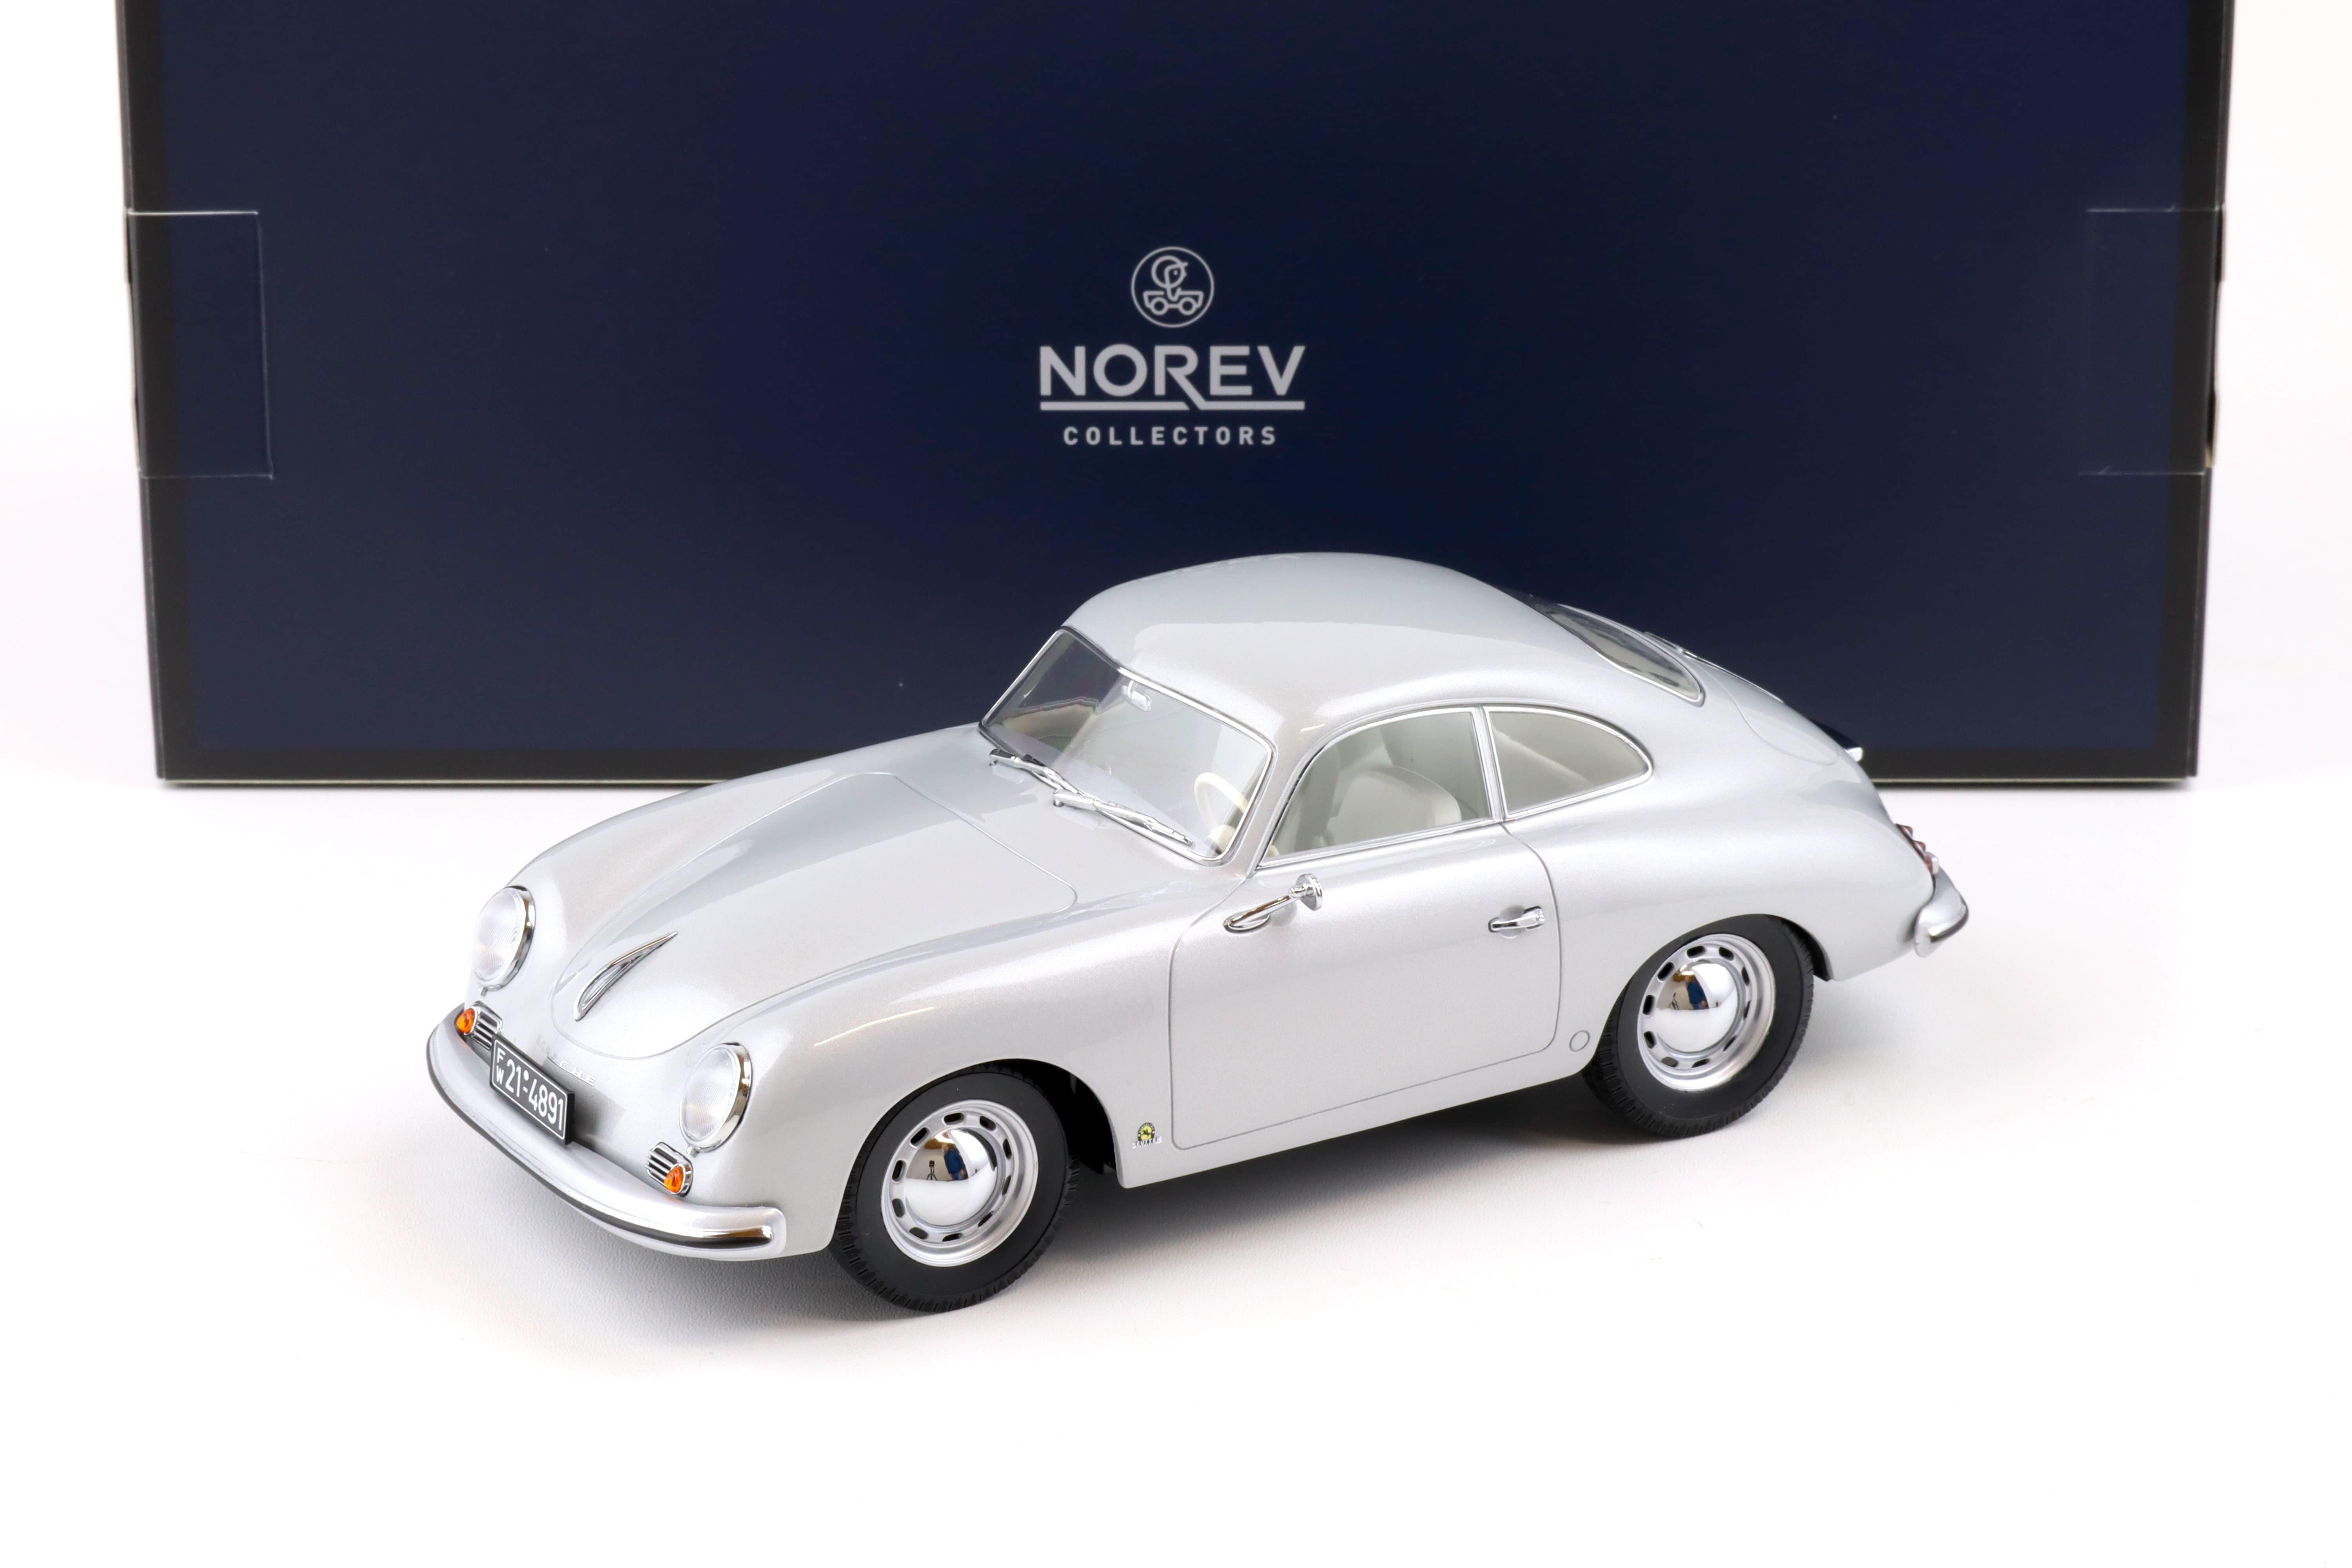 1:18 Norev Porsche 356 Coupe 1954 silver - Limited 400 pcs.